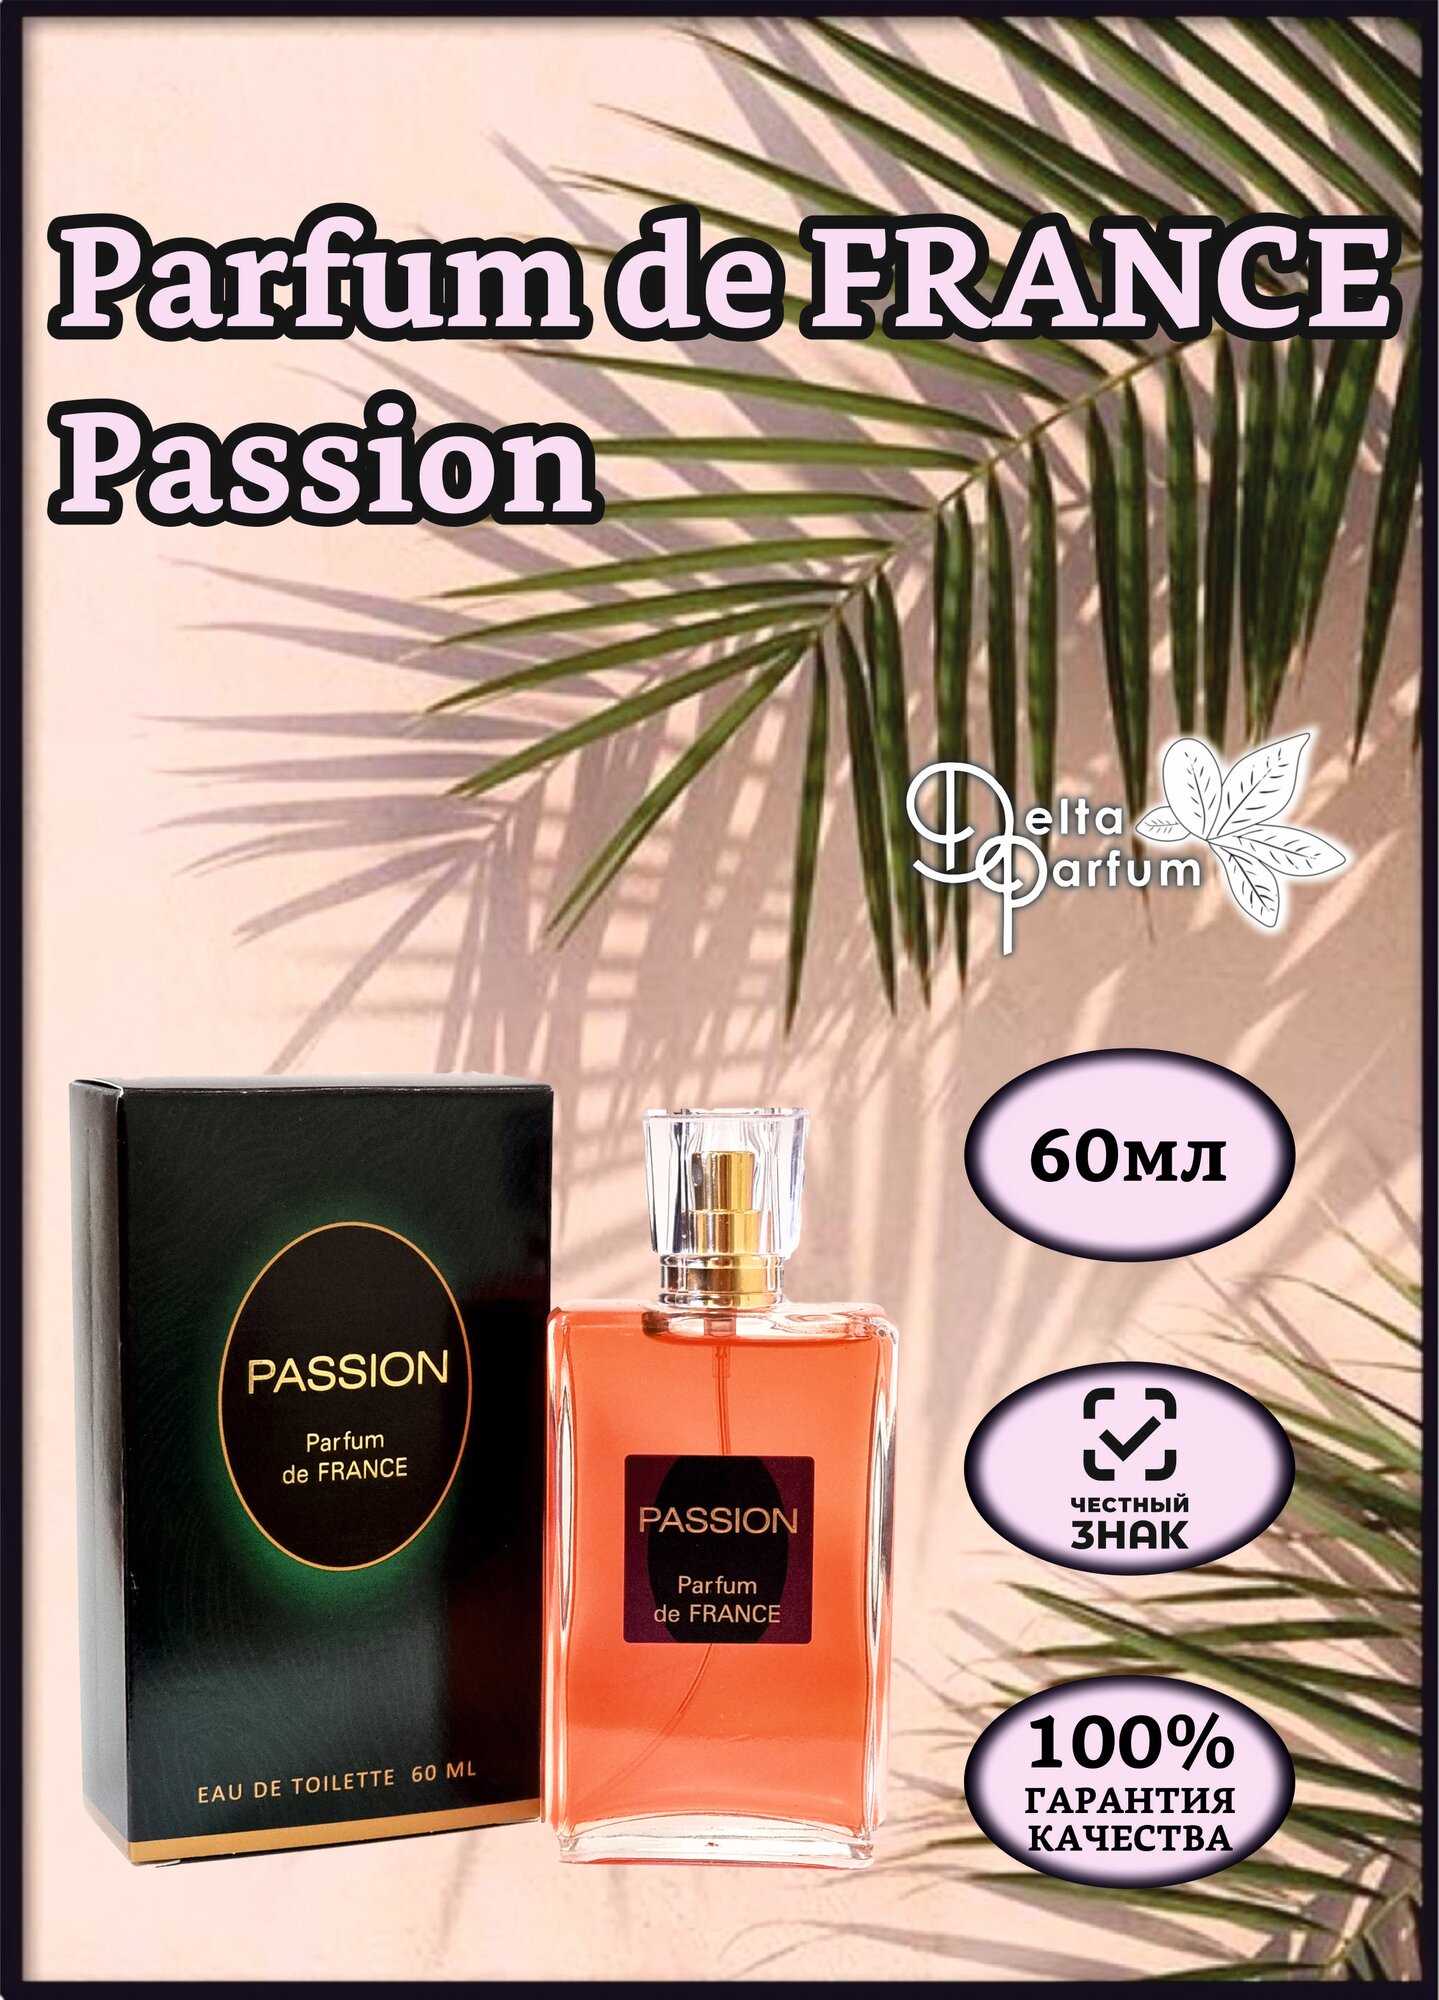 VIVCI (Delta parfum) Туалетная вода женская Parfum de France Passion